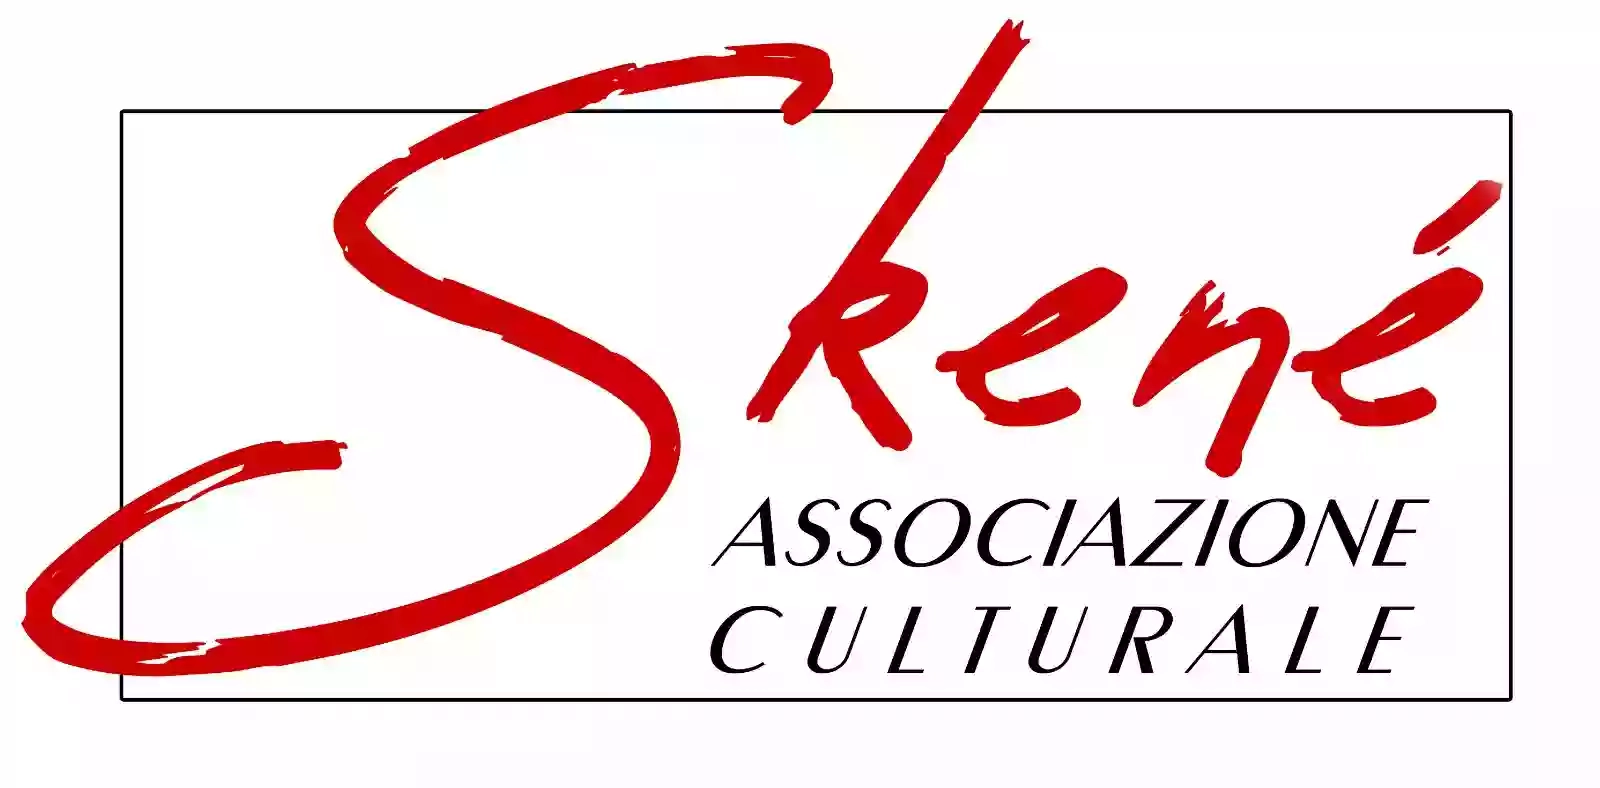 Associazione Culturale Skené